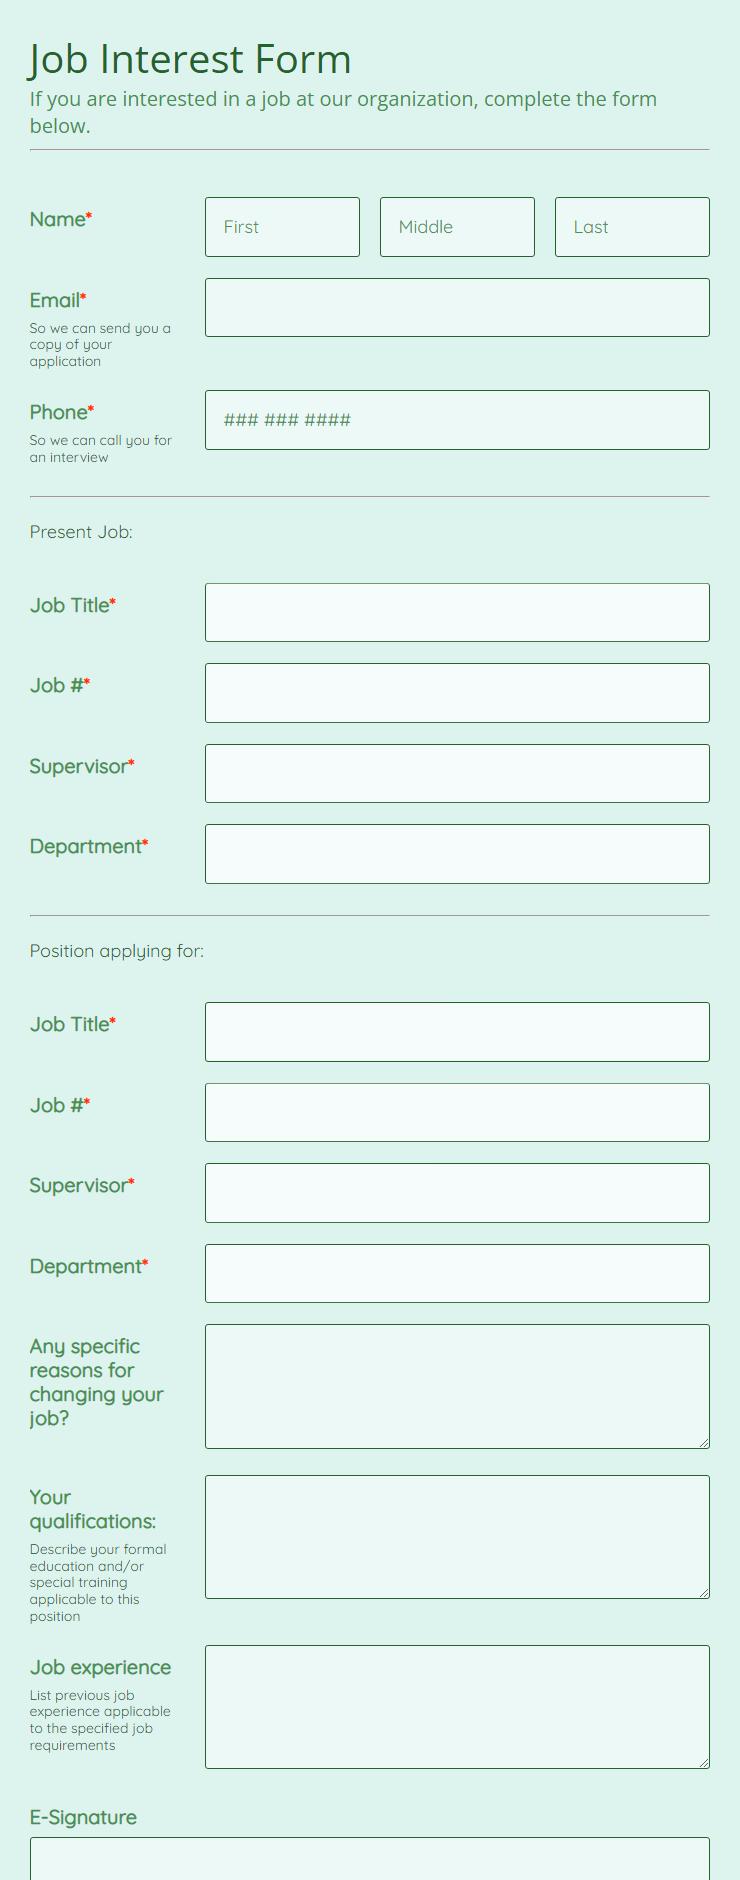 online-job-interest-form-template-123-form-builder